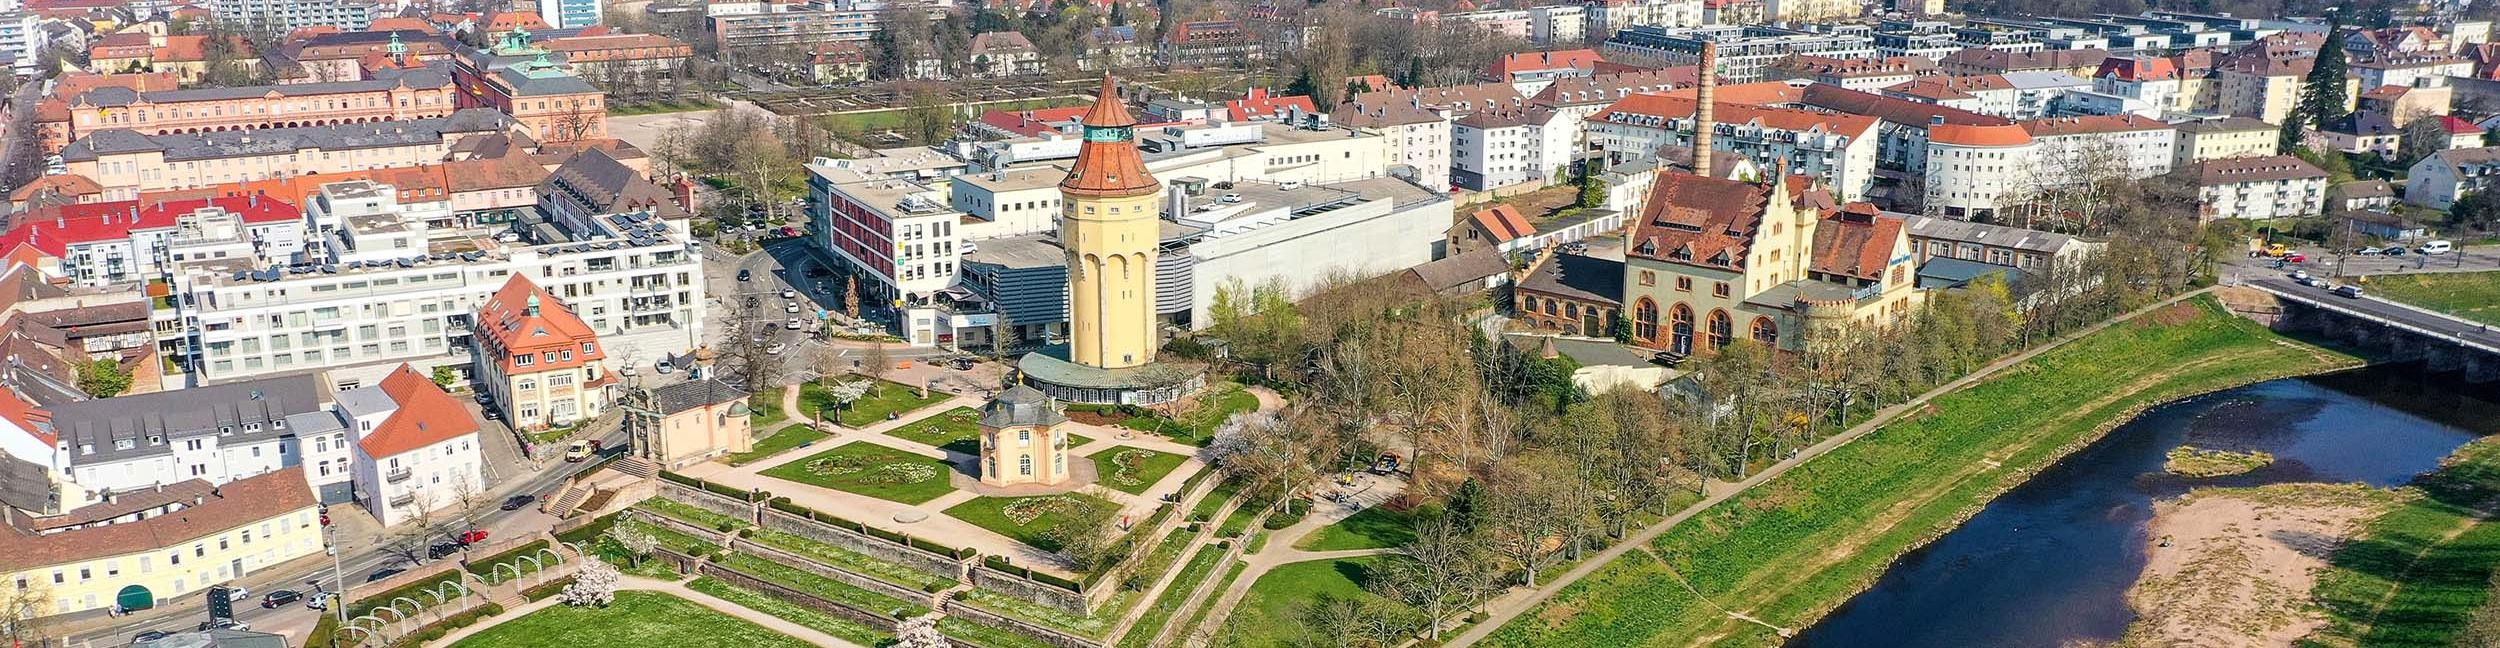 Luftaufnahme vom Wasserturm in Rastatt mit Blick auf die Innenstaft